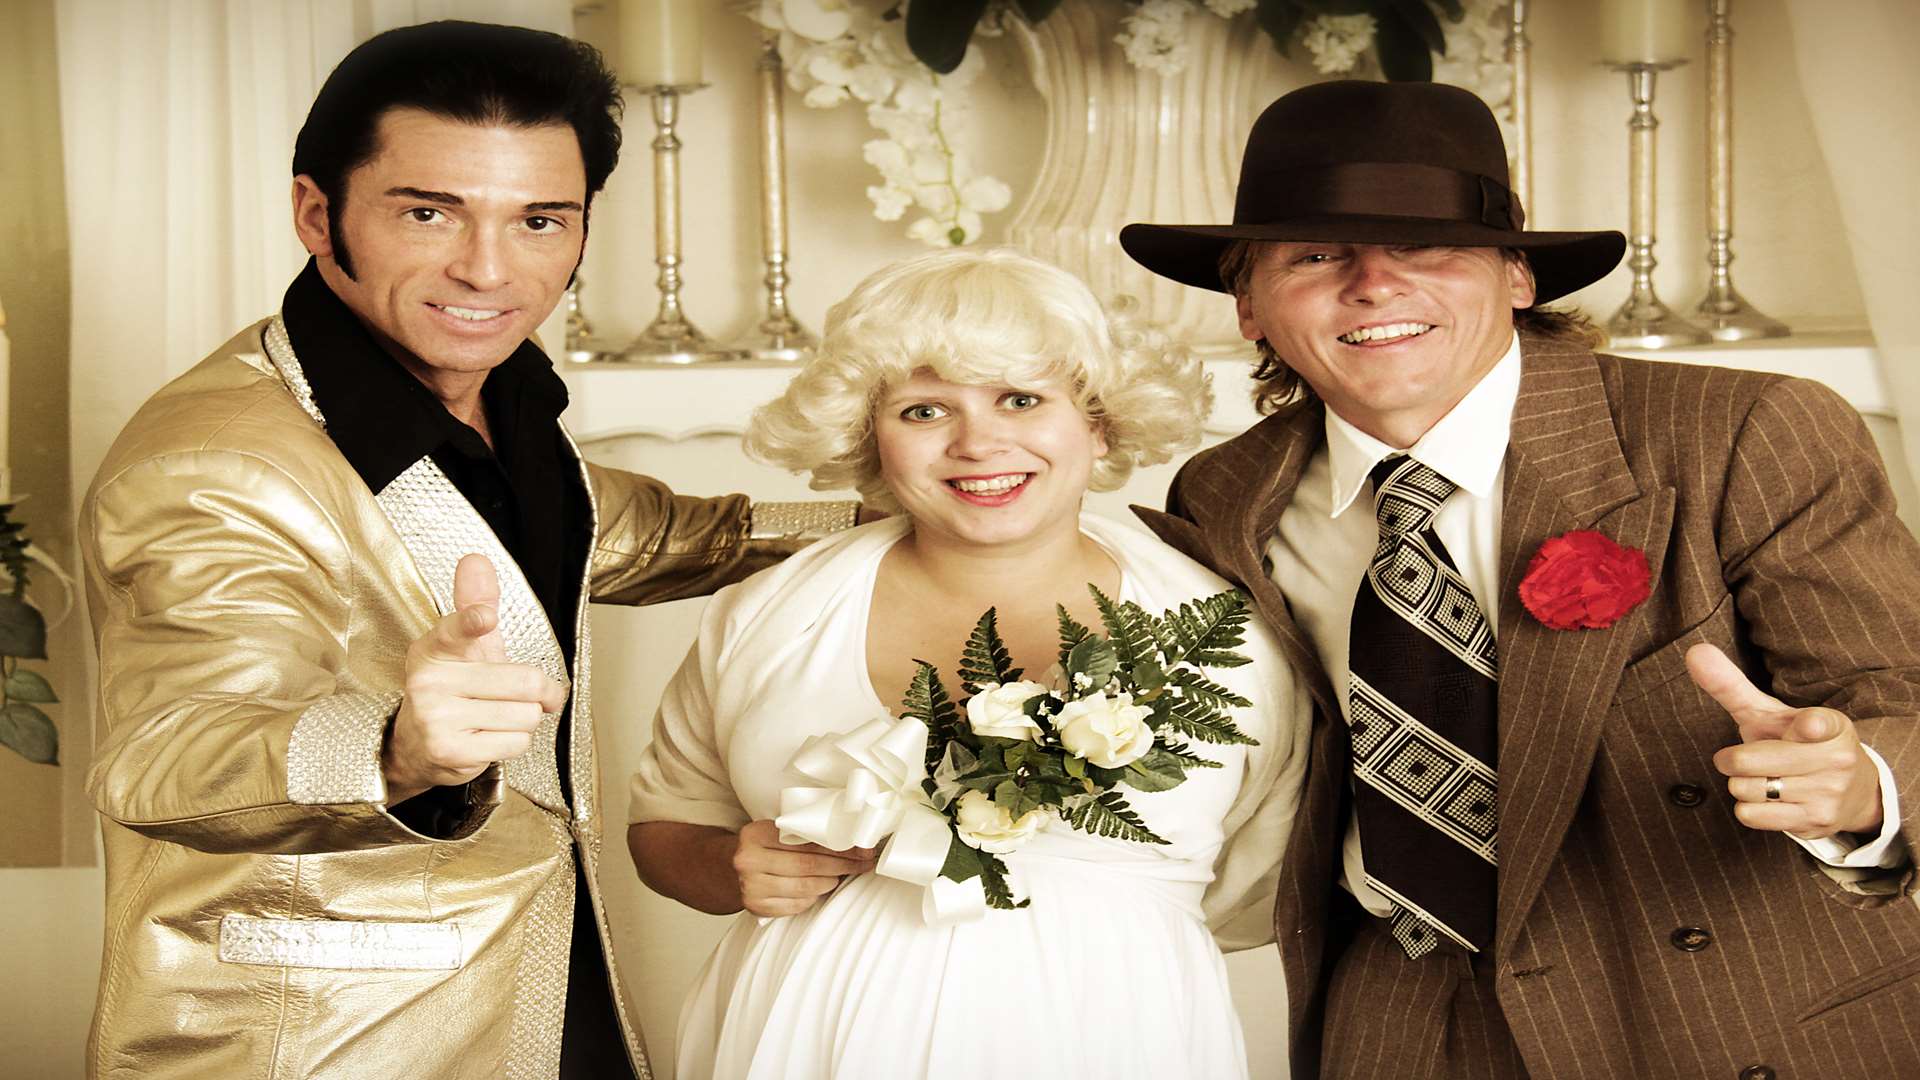 Tony and Larisa Caplin's wedding in Las Vegas with guest 'Elvis Presley'